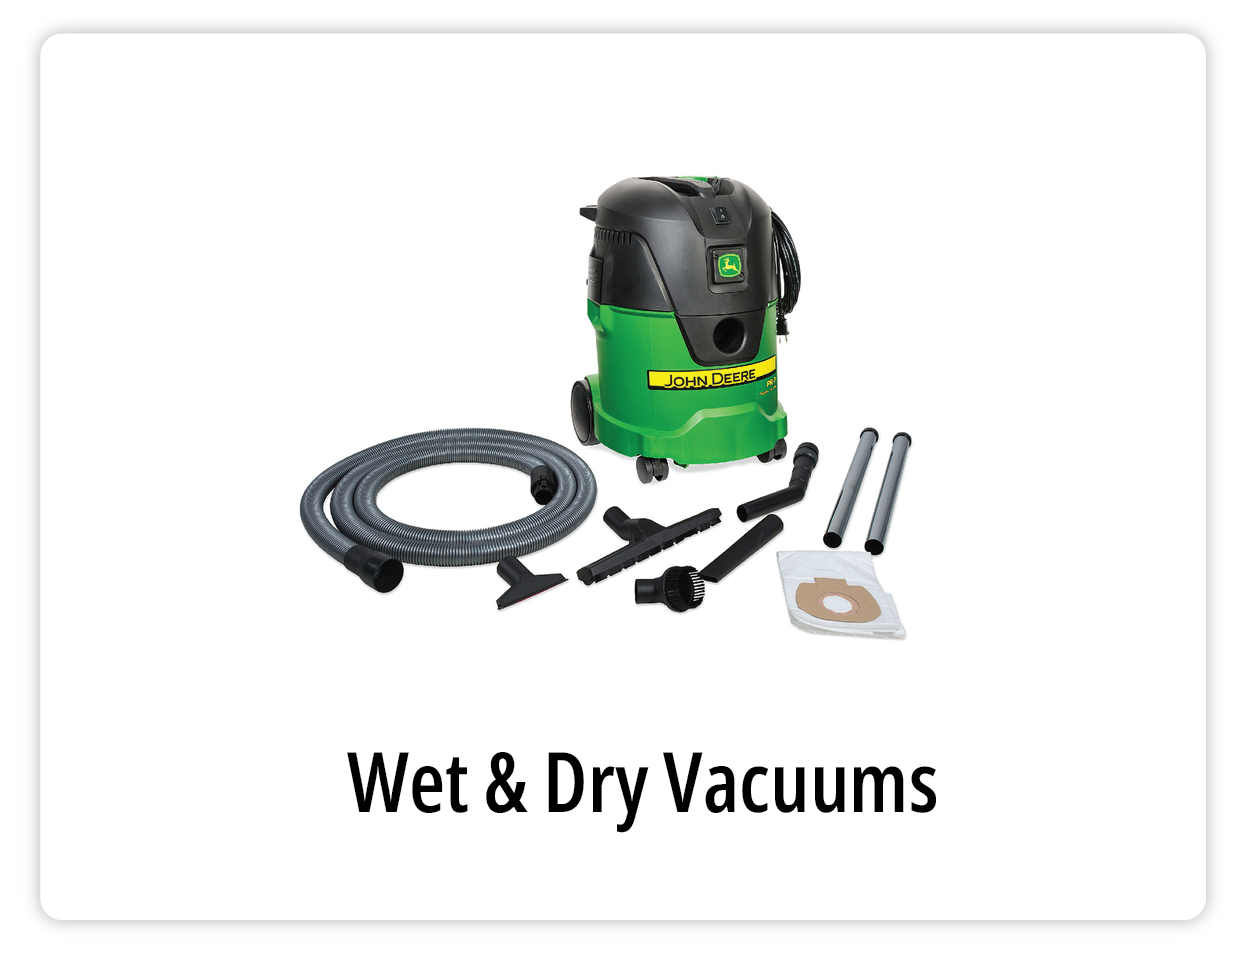 John Deere Wet & Dry Vacuums